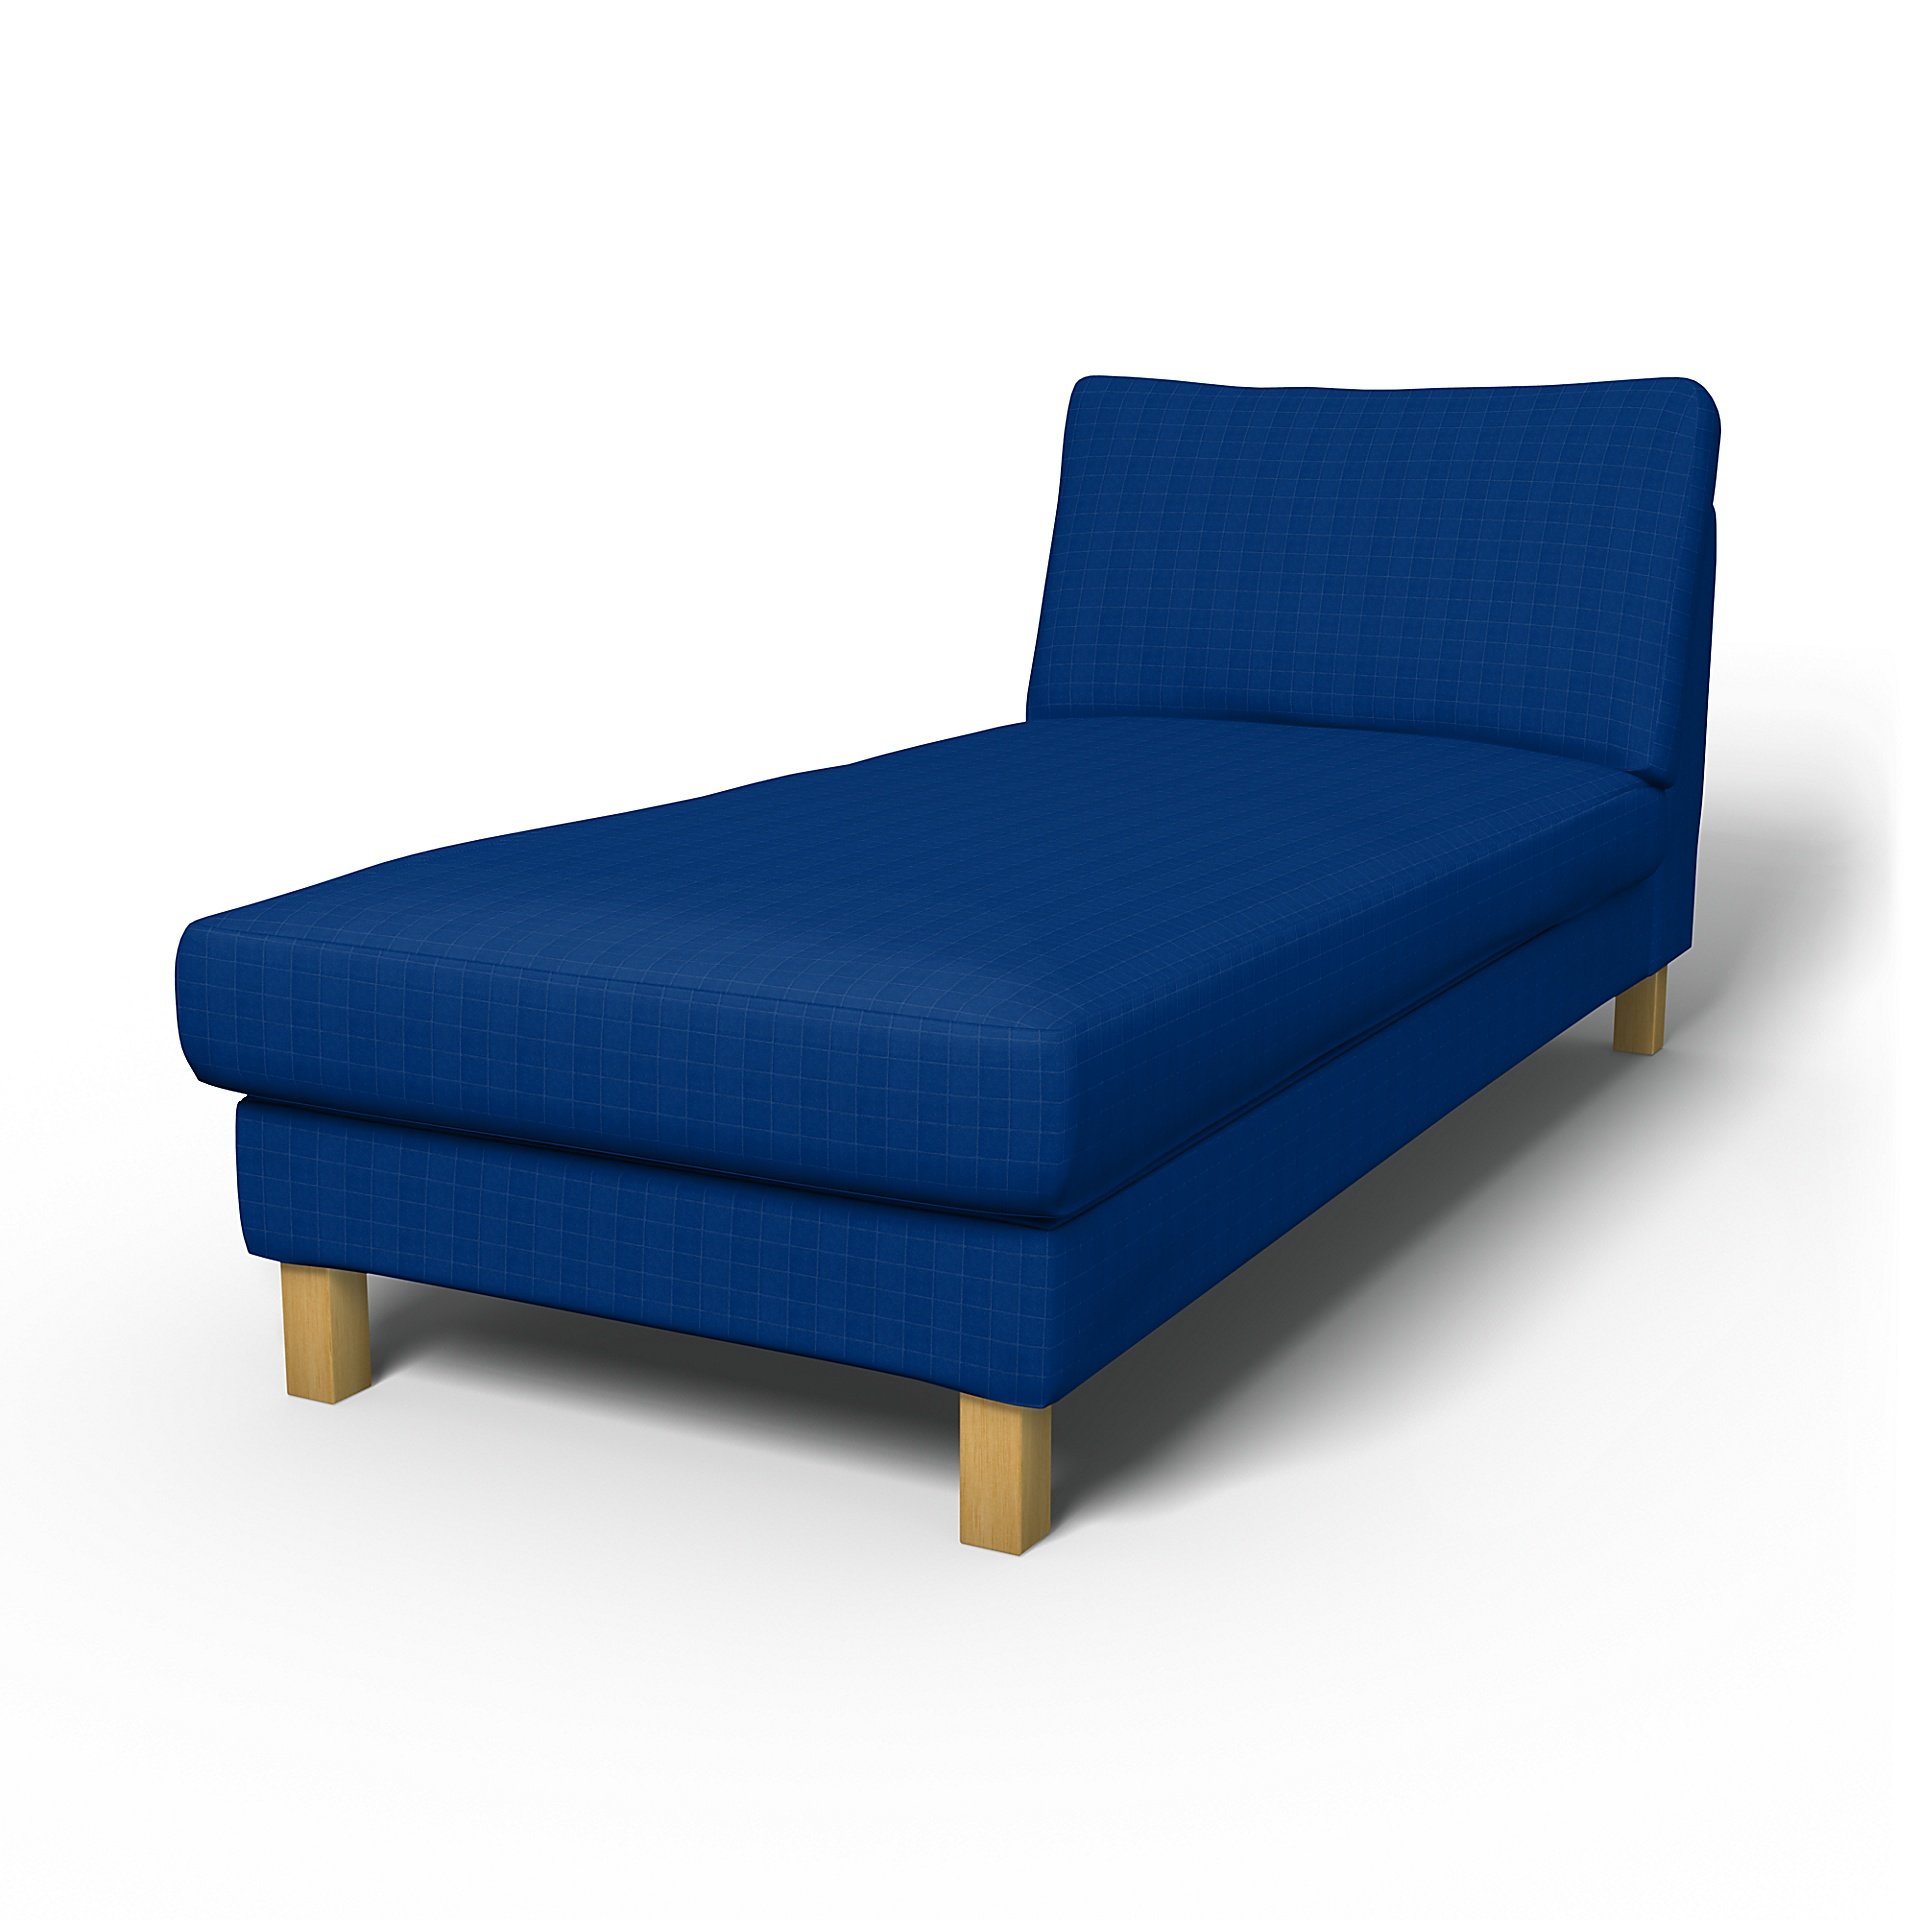 IKEA - Karlstad Stand Alone Chaise Longue Cover, Lapis Blue, Velvet - Bemz